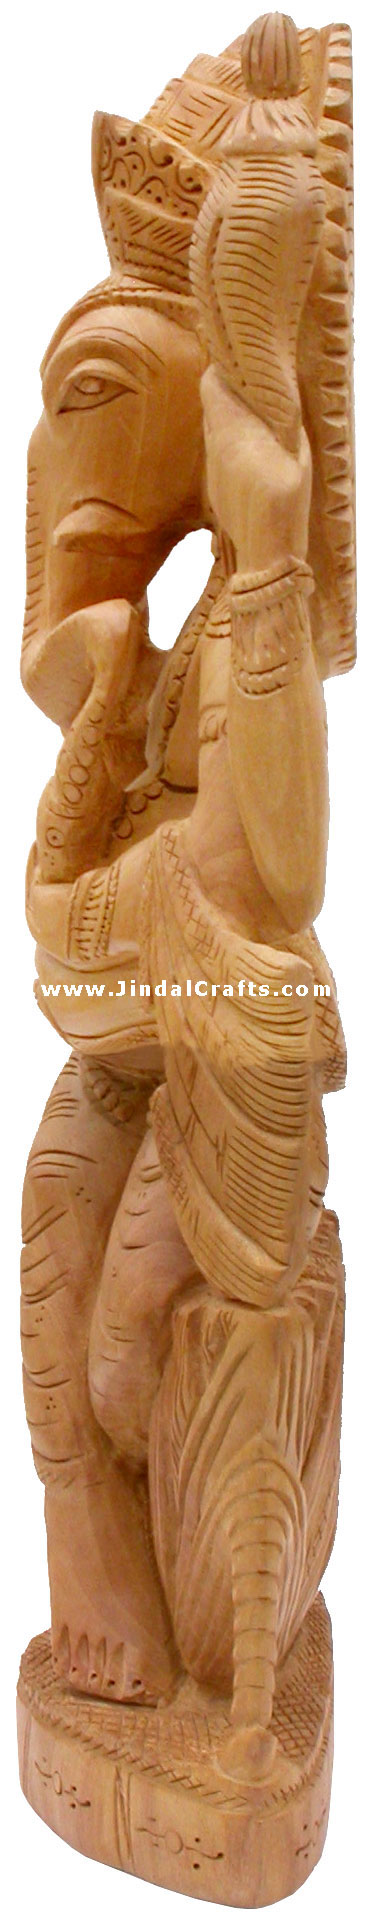 Handcrafted Wooden Ganesha Hindu Sculptures Art